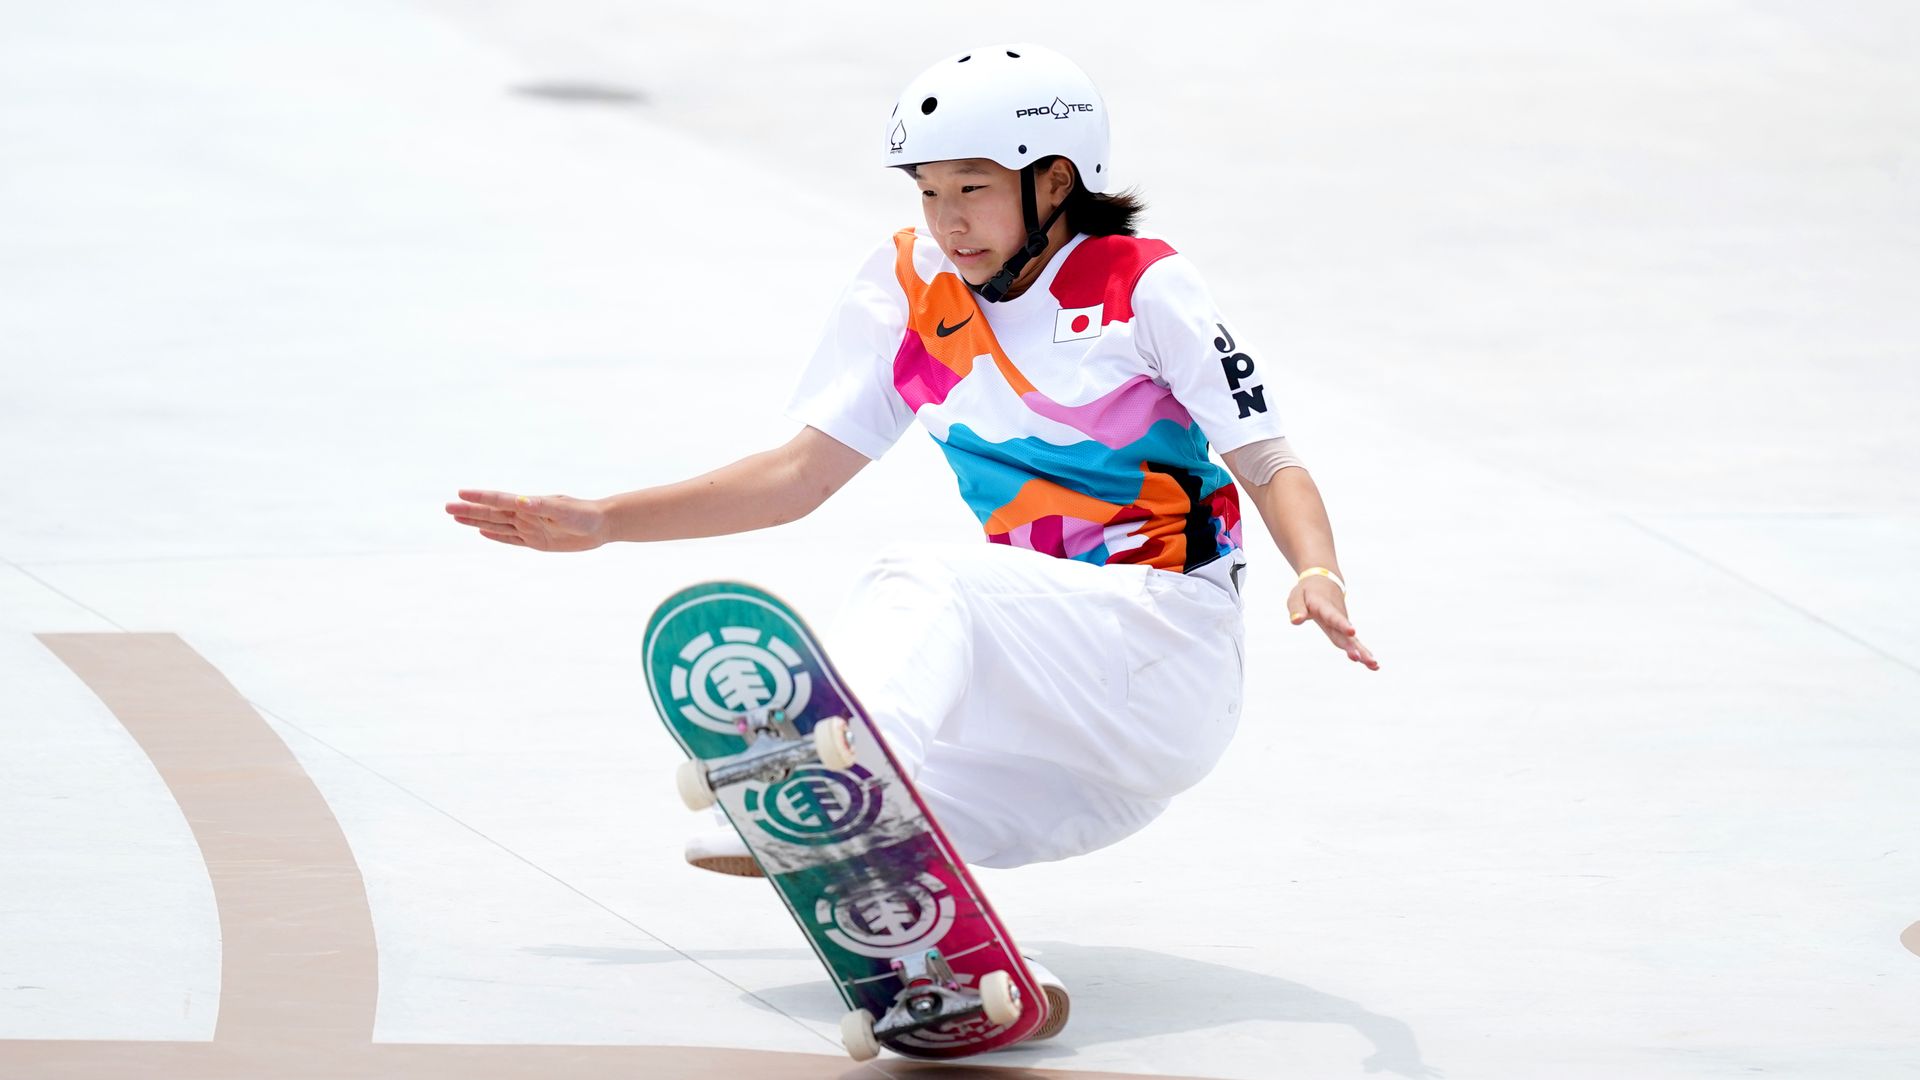 Nishiya, 13, claims gold in women's street skateboarding